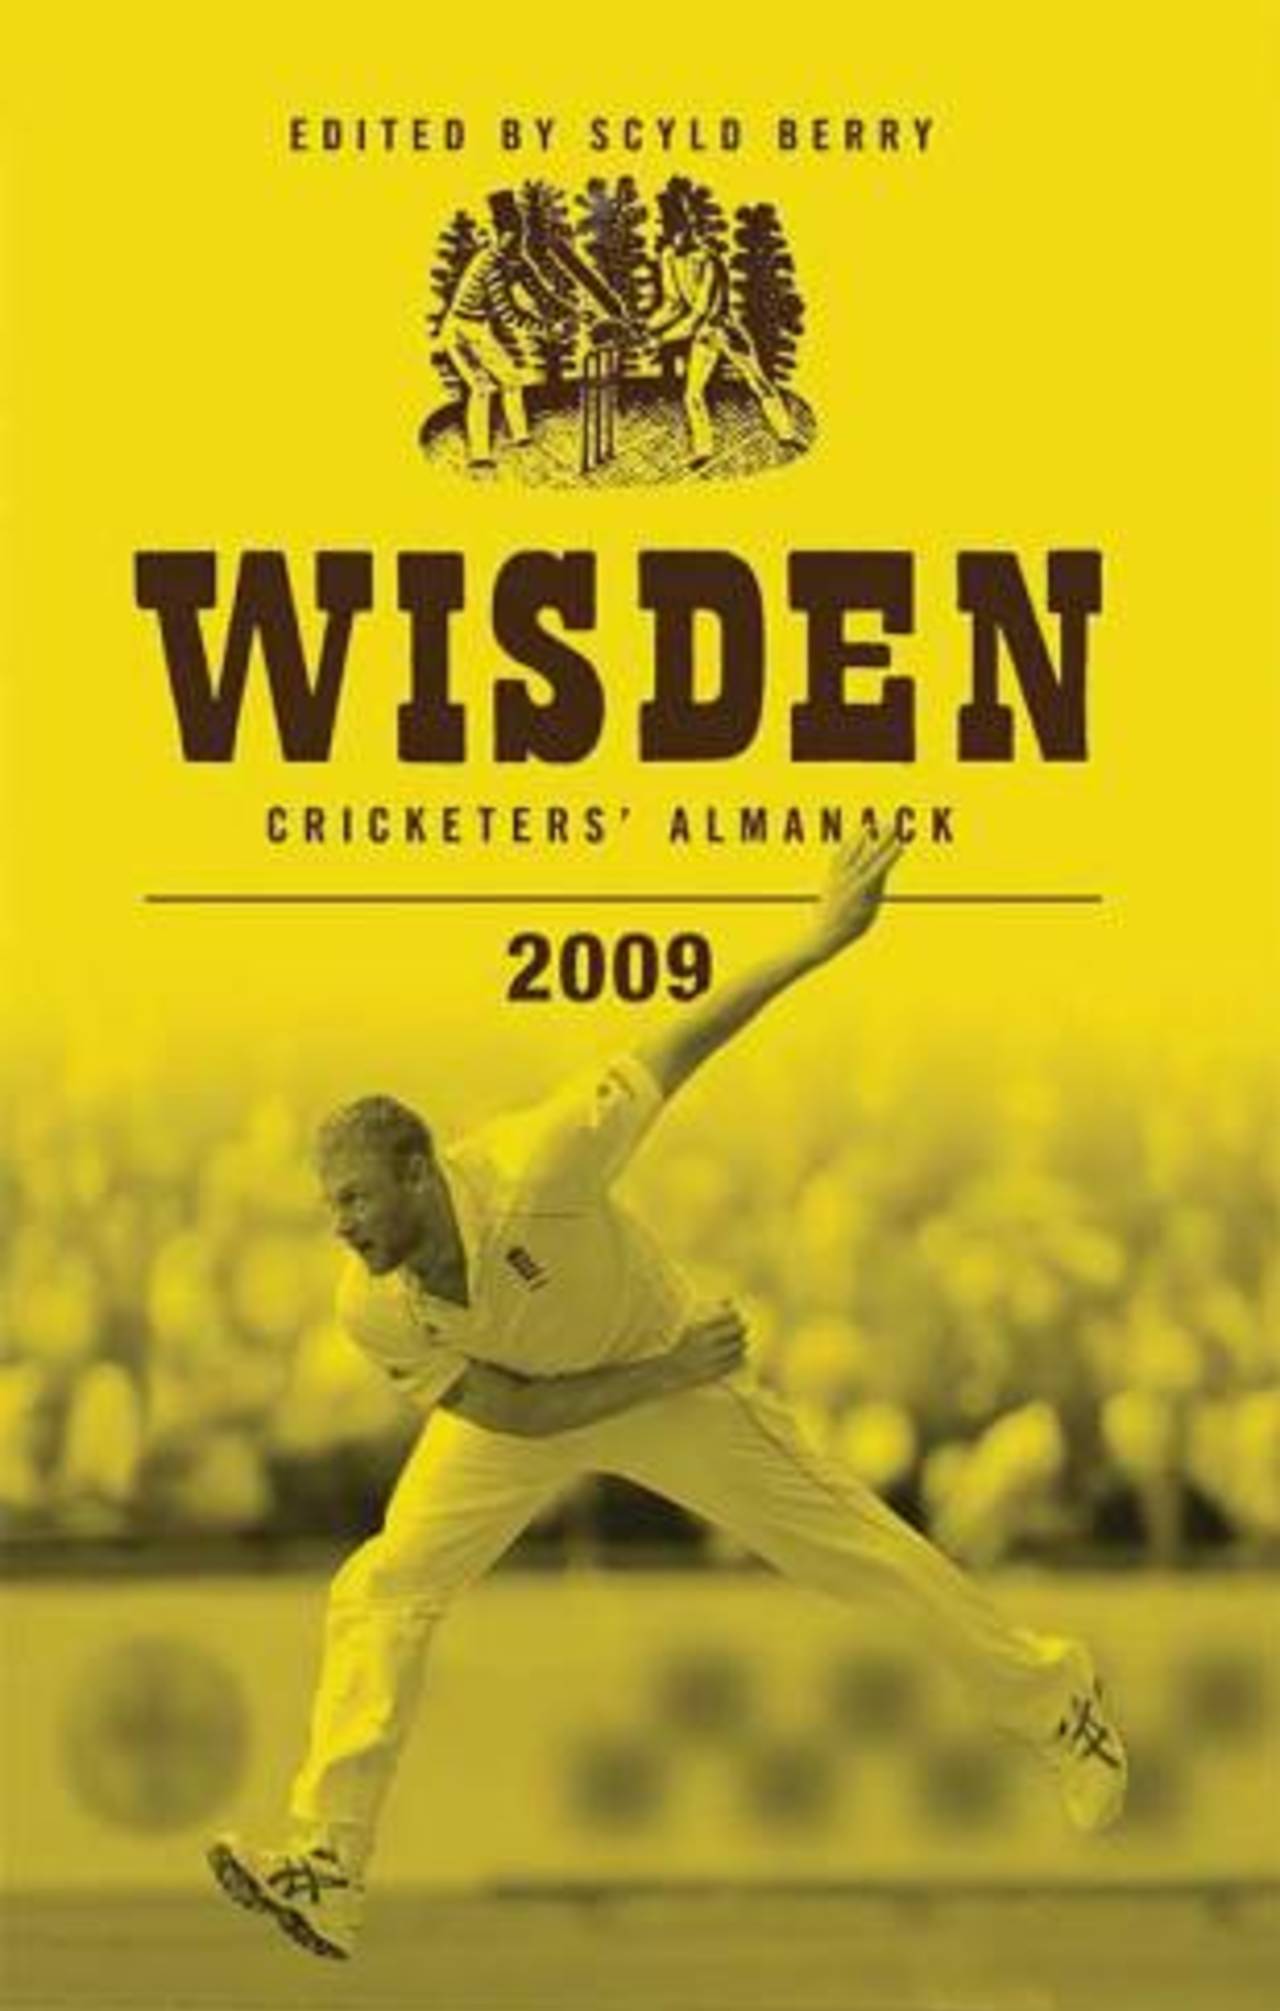 Wisden records a challenging year for cricket&nbsp;&nbsp;&bull;&nbsp;&nbsp;Wisden